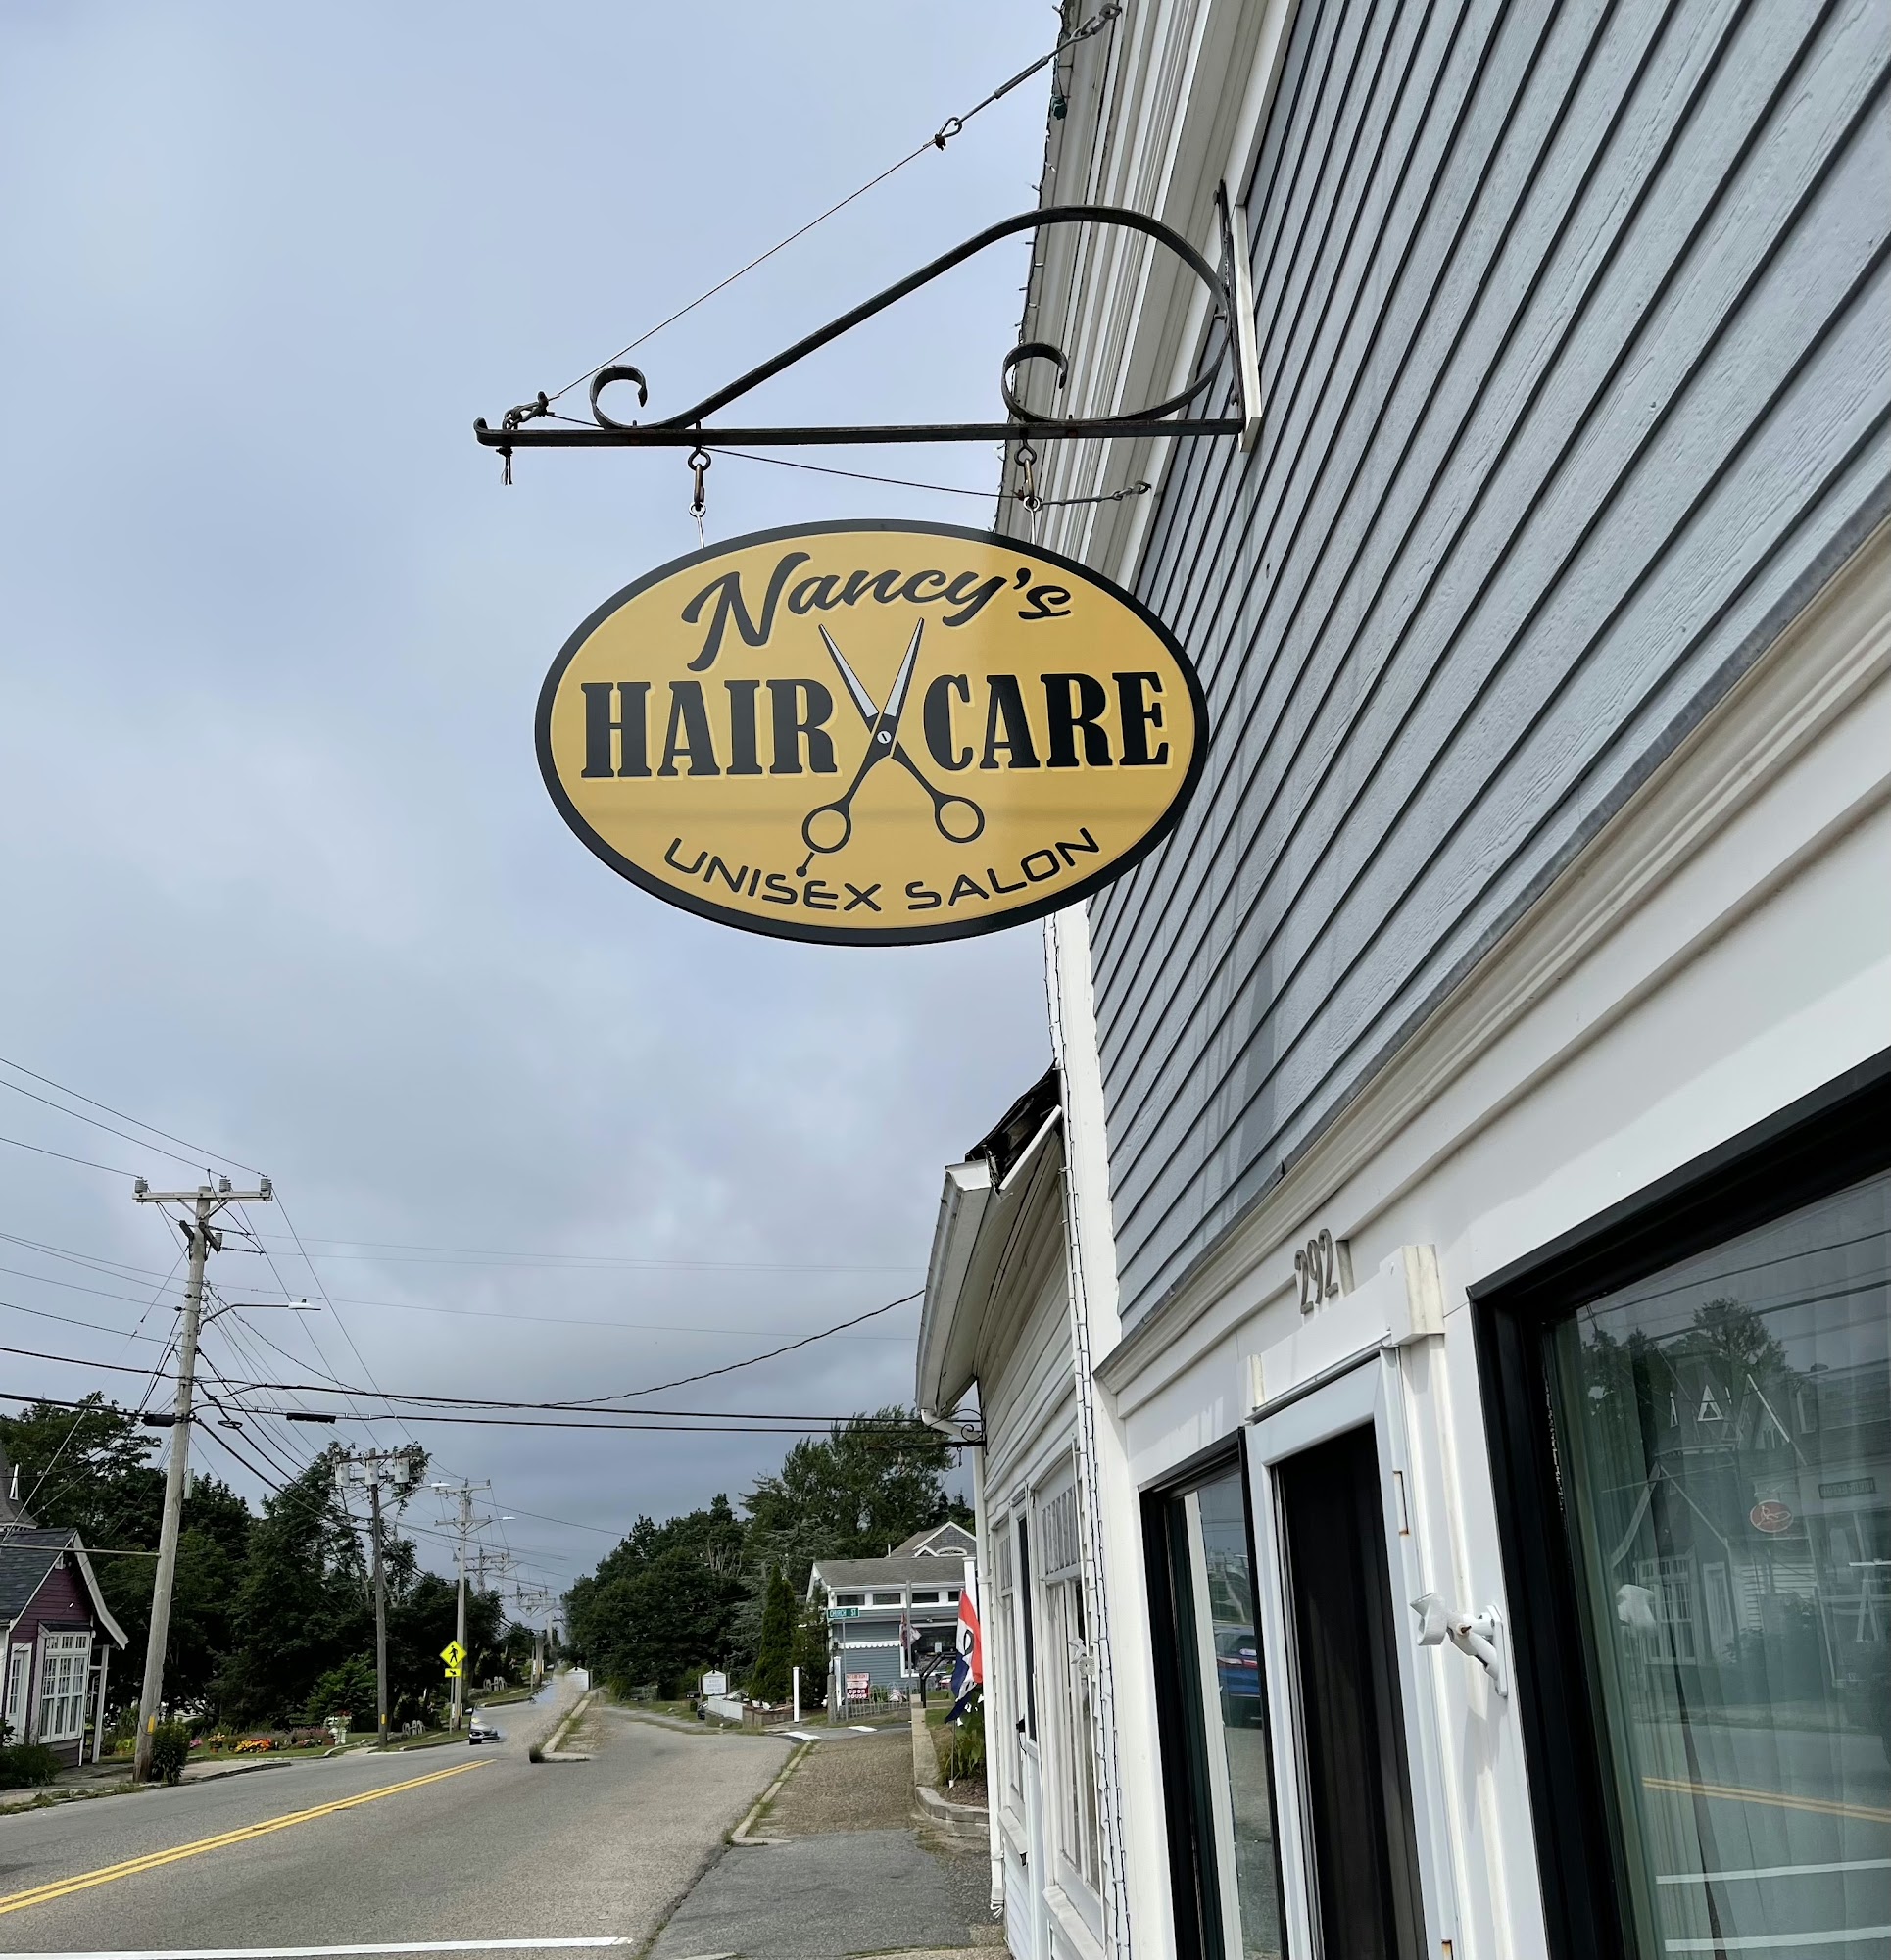 Nancy's Hair Care 292 Main St, West Dennis Massachusetts 02670